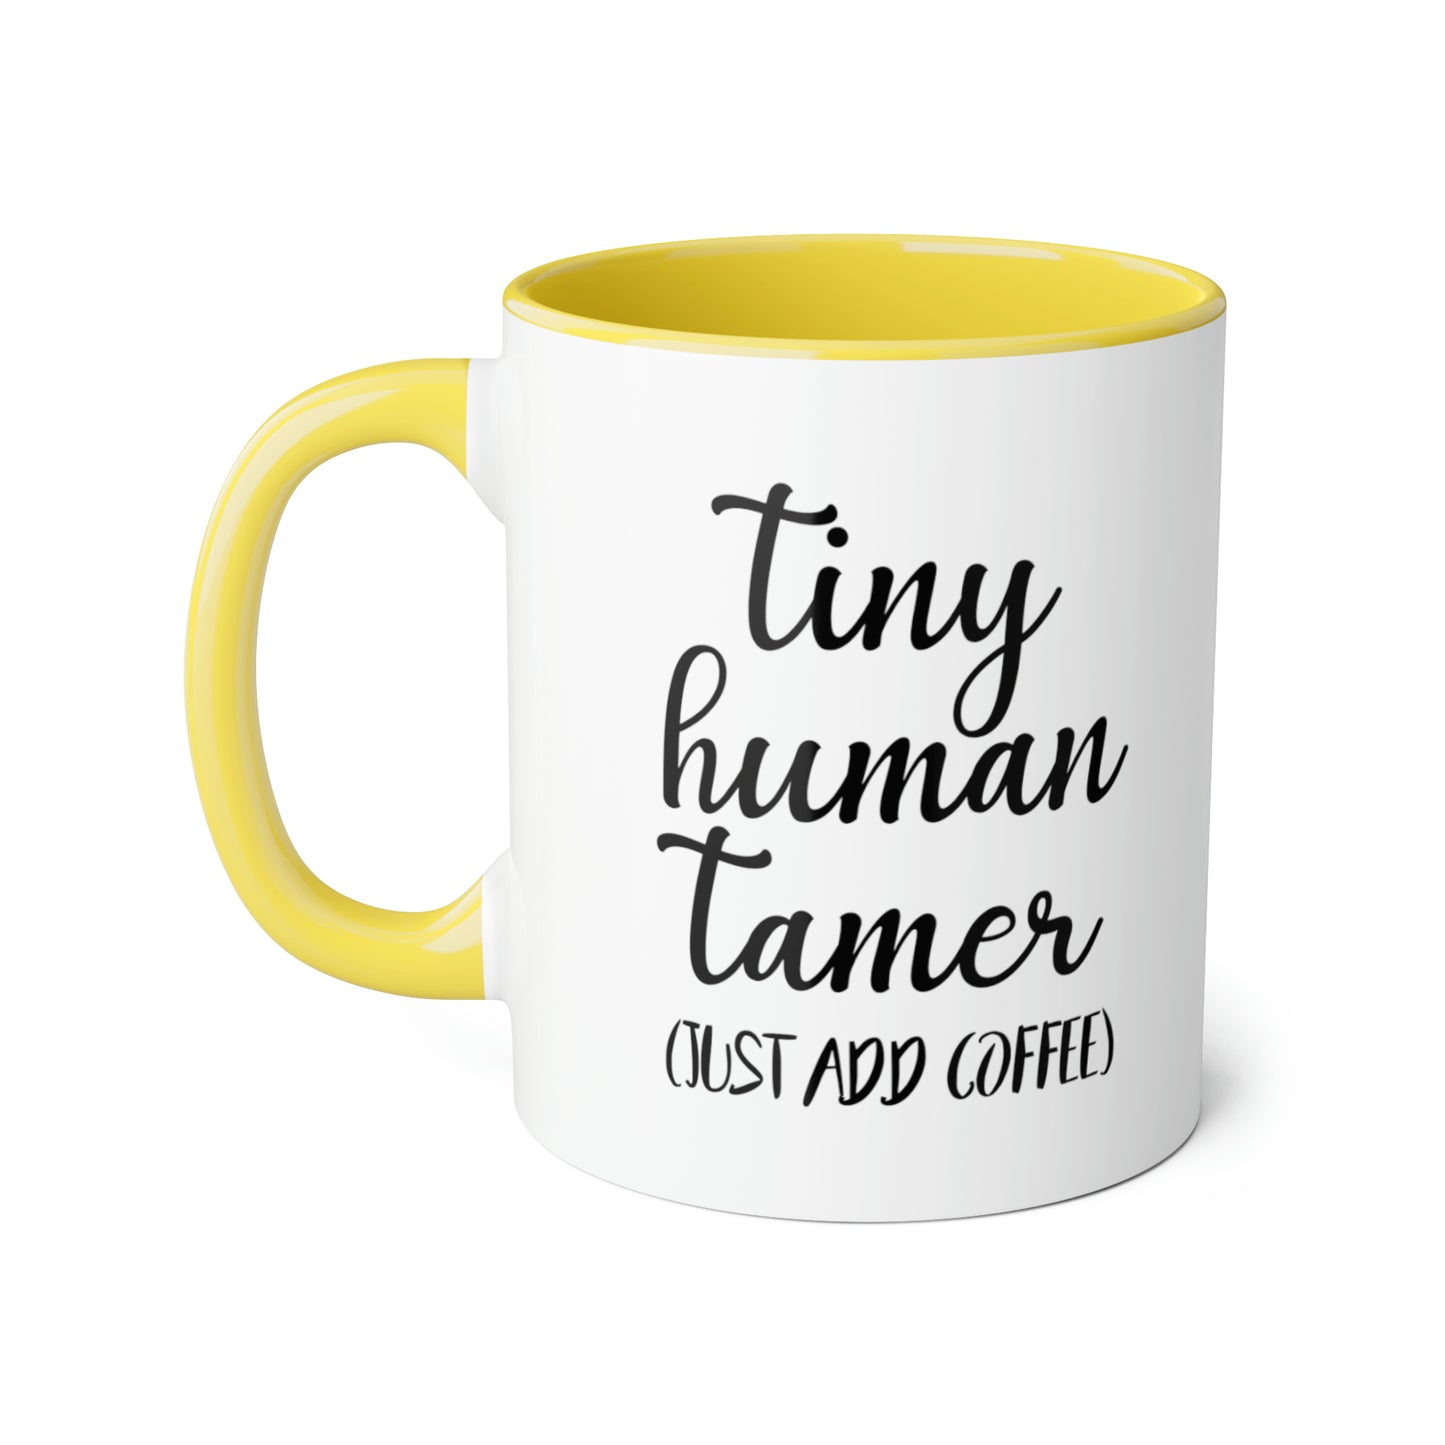 Tiny Human Tamer Accent Mugs, 11oz